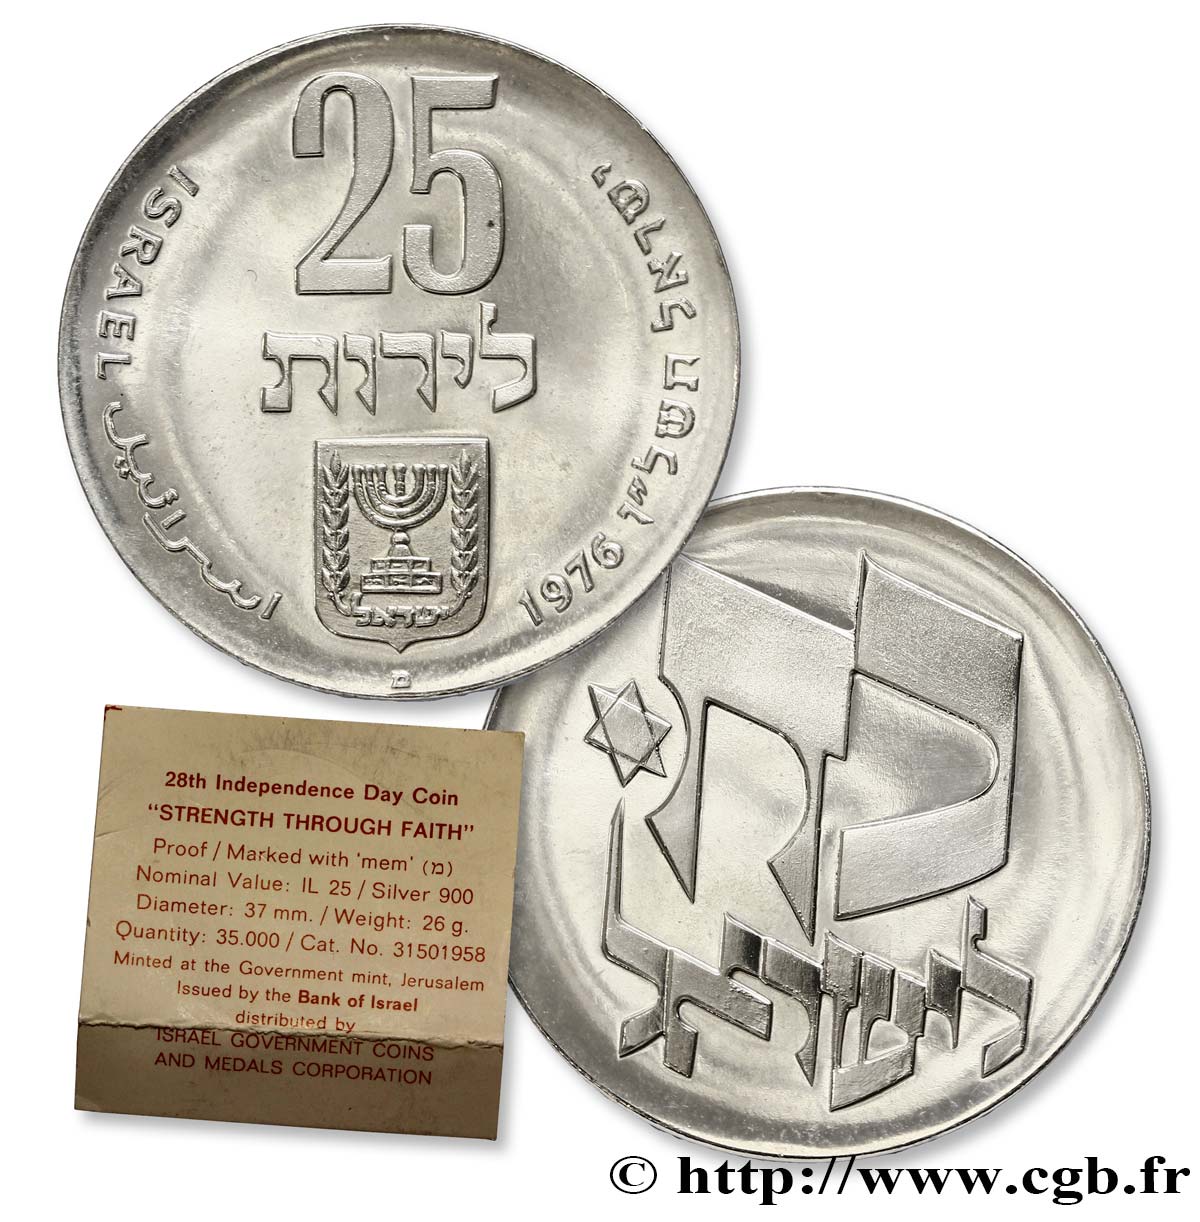 ISRAELE 25 Lirot Proof 28e anniversaire de l’indépendance marque lettre “mem 1976  MS 